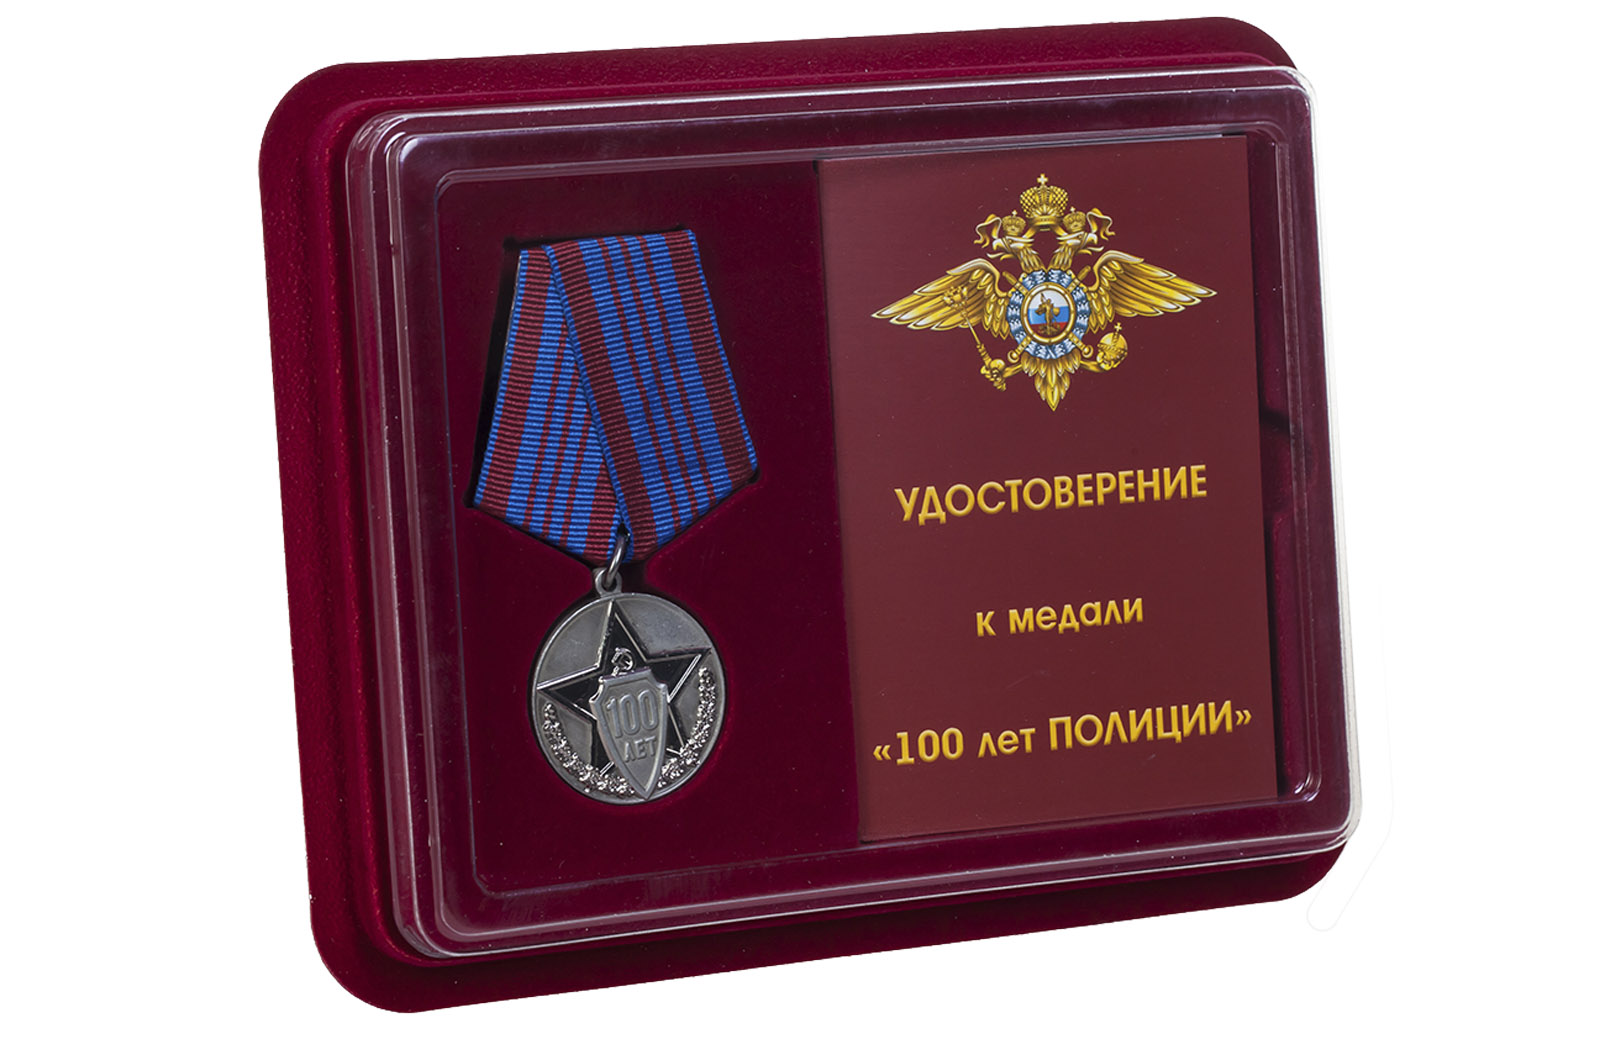 Купить юбилейную медаль 100 лет полиции России онлайн  выгодно